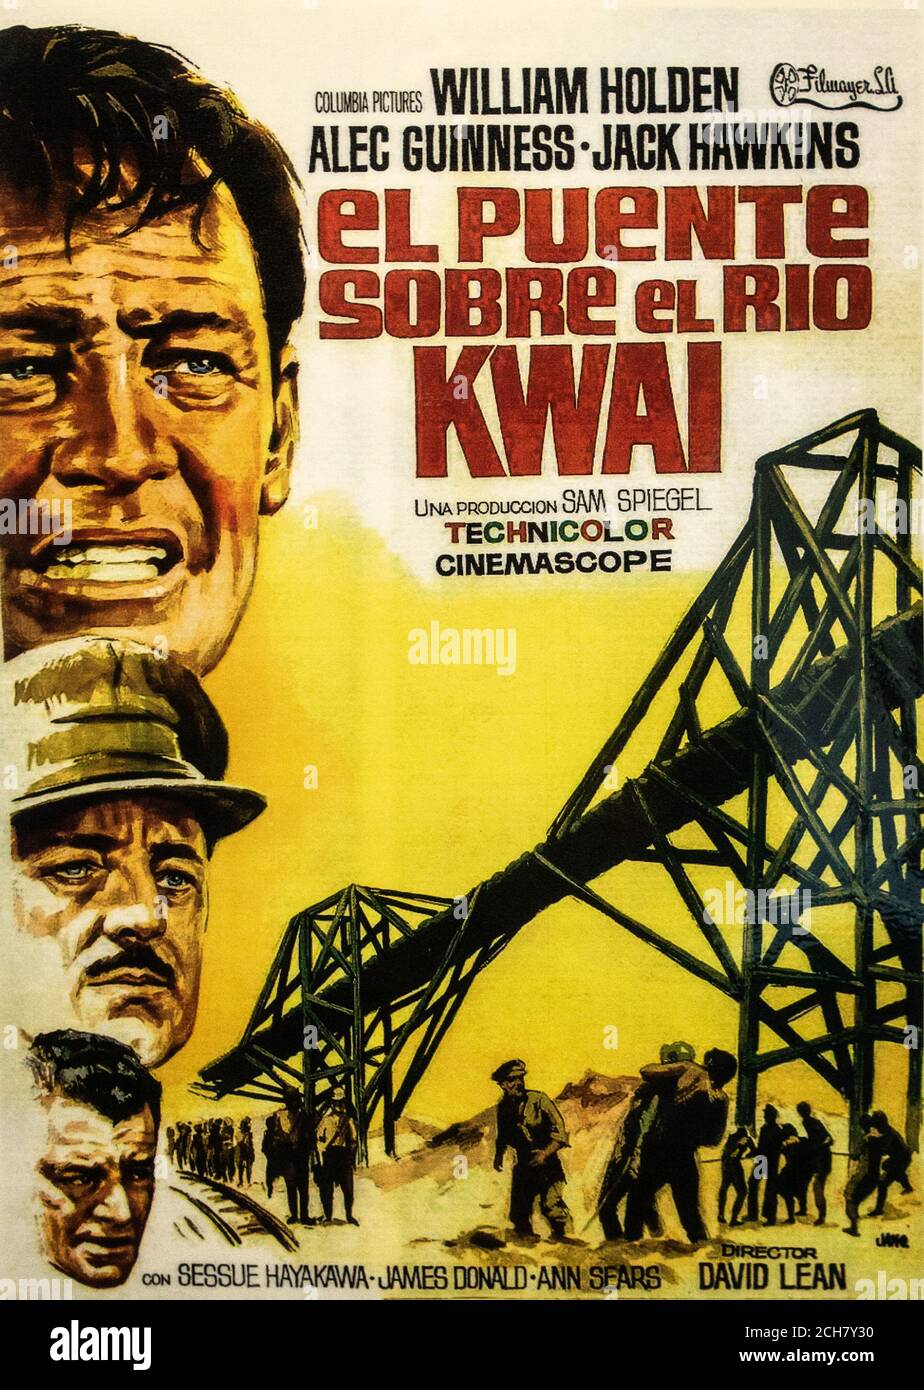 El Puente Sobre el Rio Kwai. Bridge over the River Kwai film poster in Spanish. Stock Photo